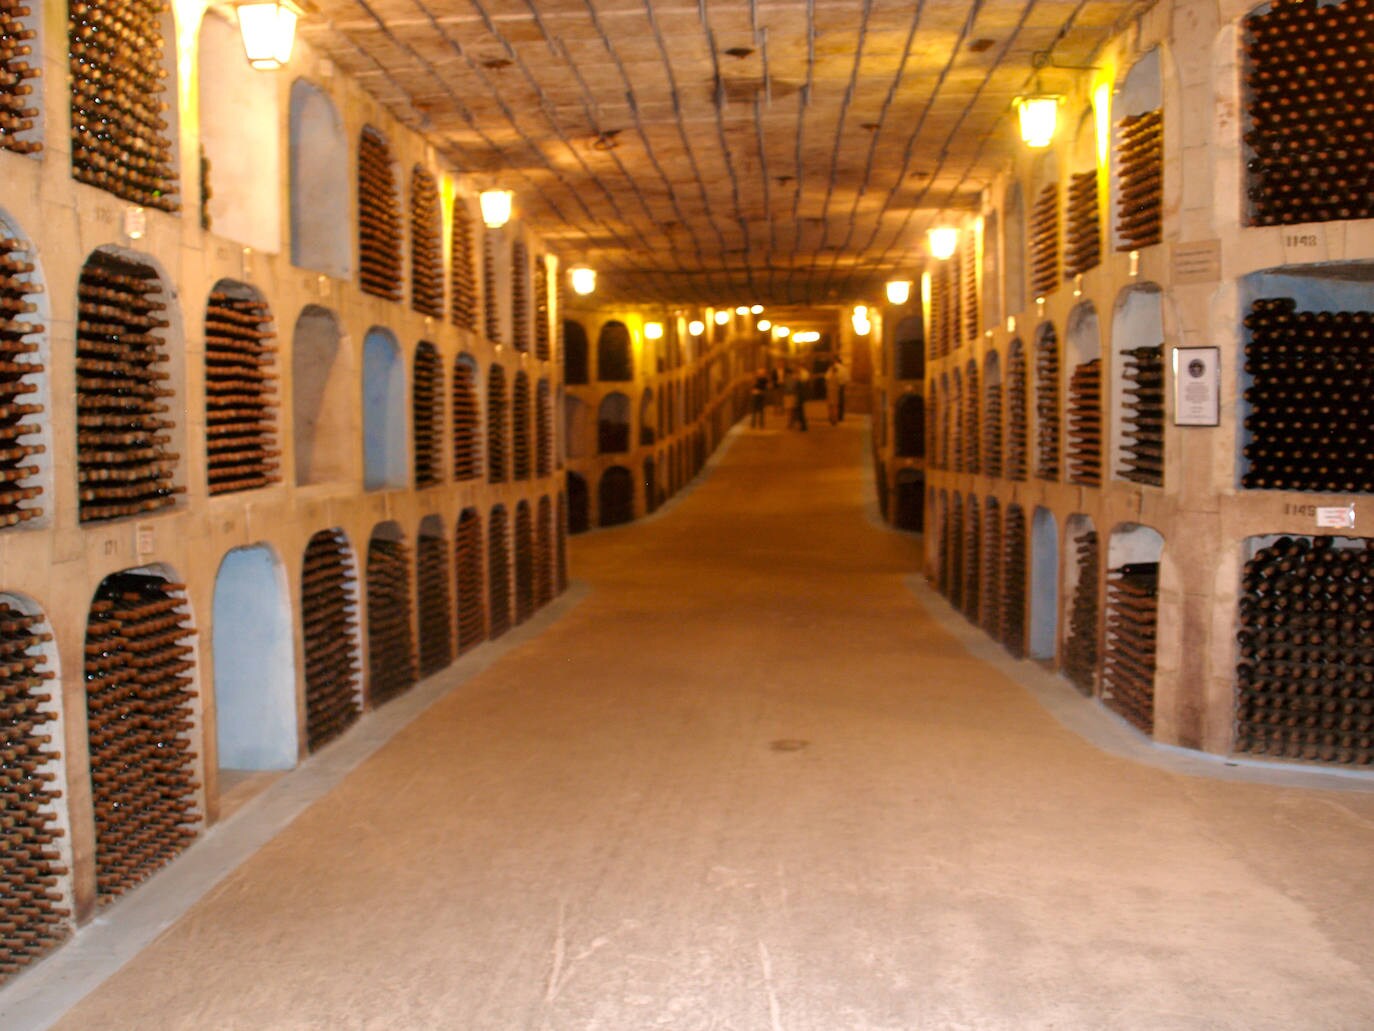 La bodega con la mayor colección de vinos se llama Milestii Mici y se encuentra en Moldavia. Alberga más de 1,5 millones de botellas distribuidas en más de 200 kilómetros de galerías subterráneas. La primera botella fue almacenada en 1968.